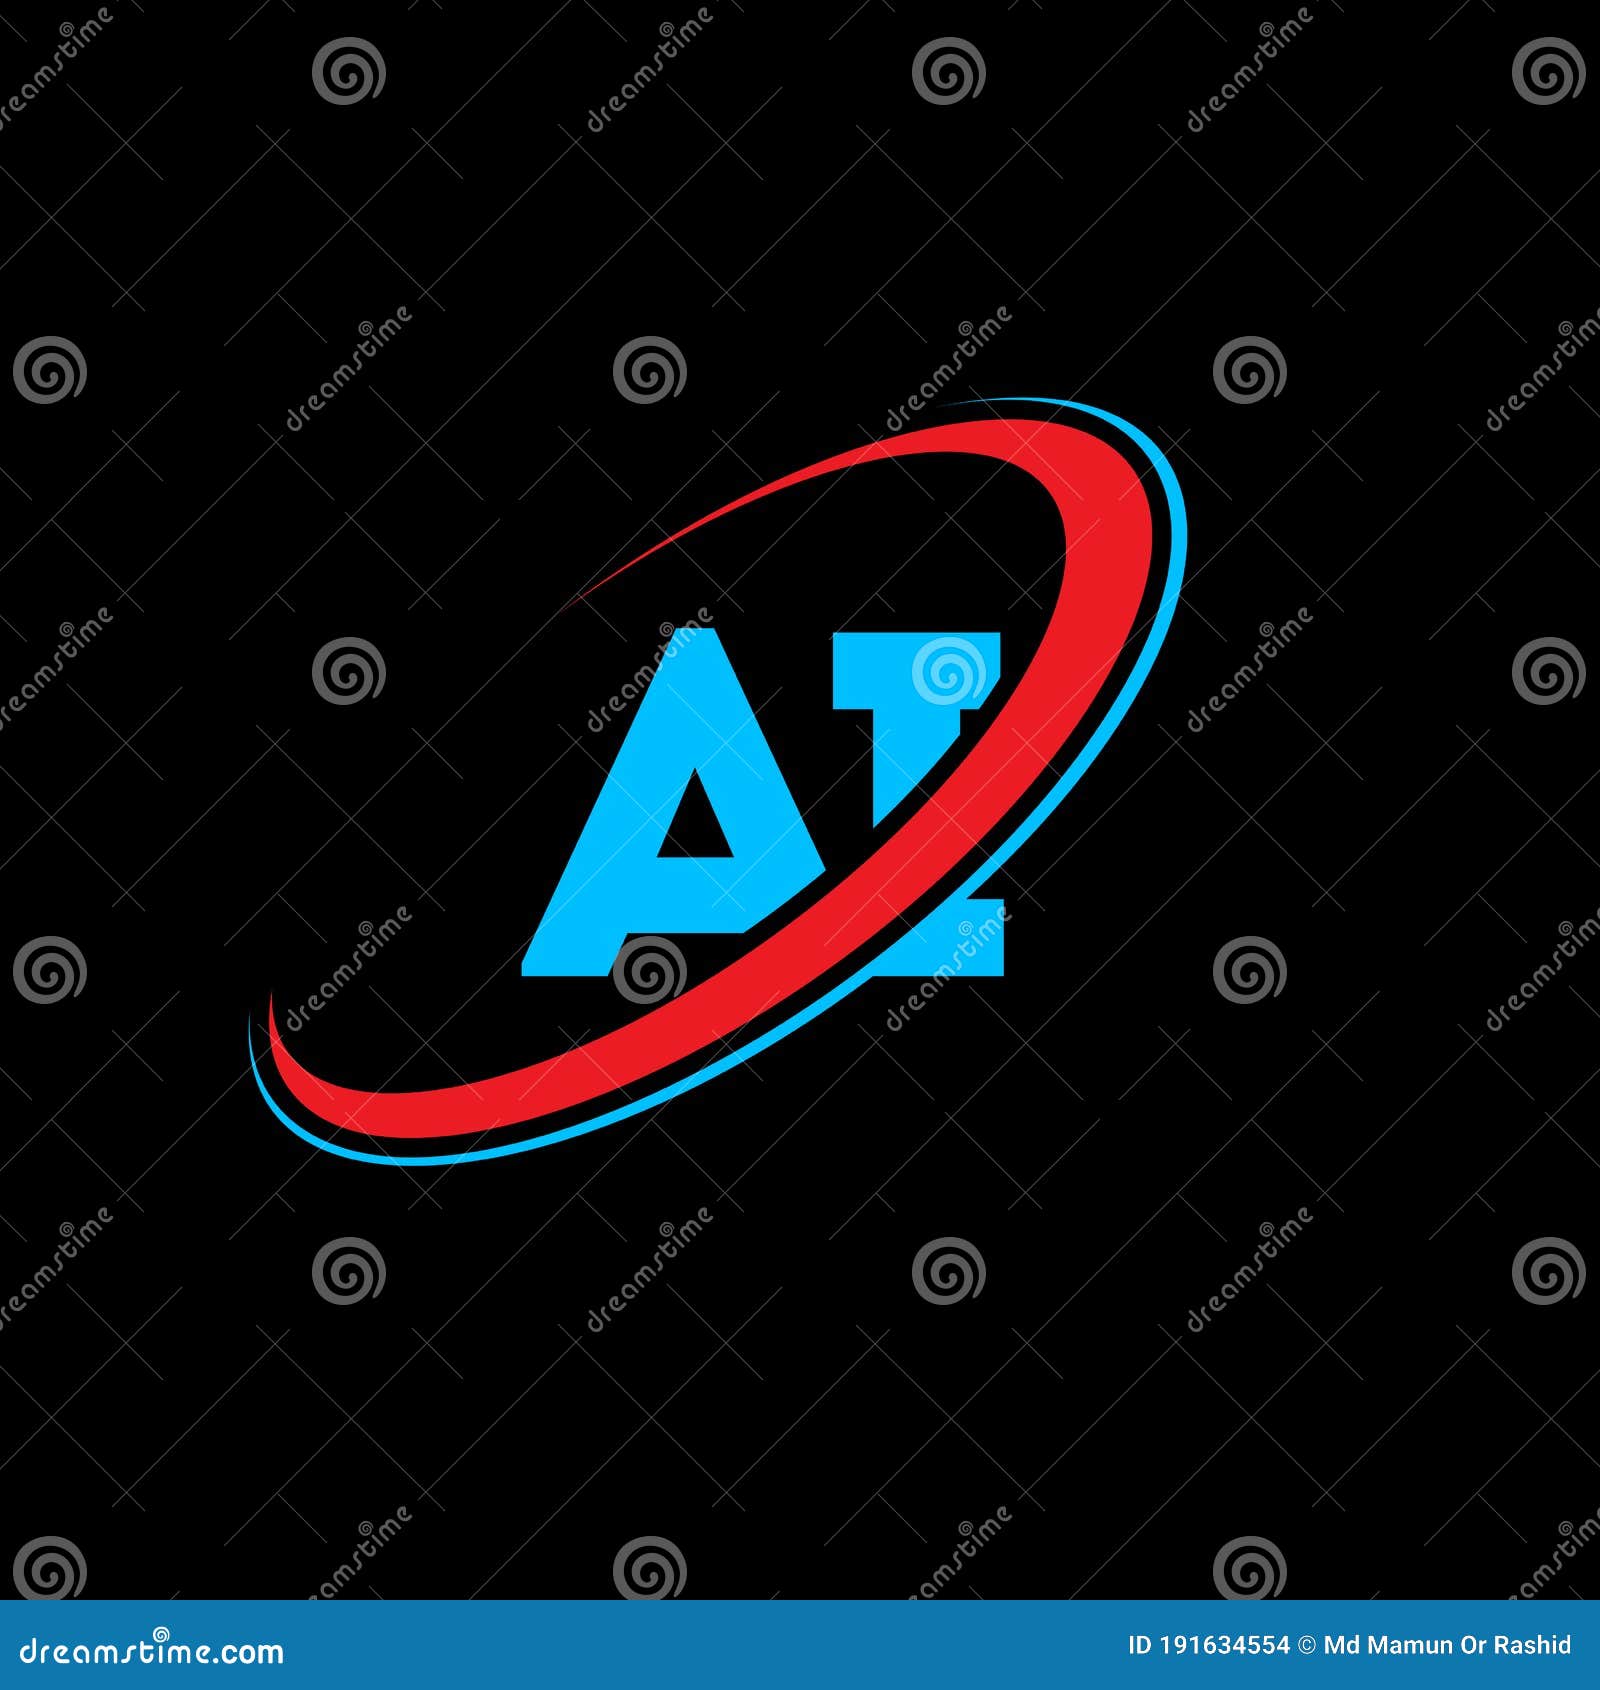 AI a I Letter Logo Design. Initial Letter AI Linked Circle ...